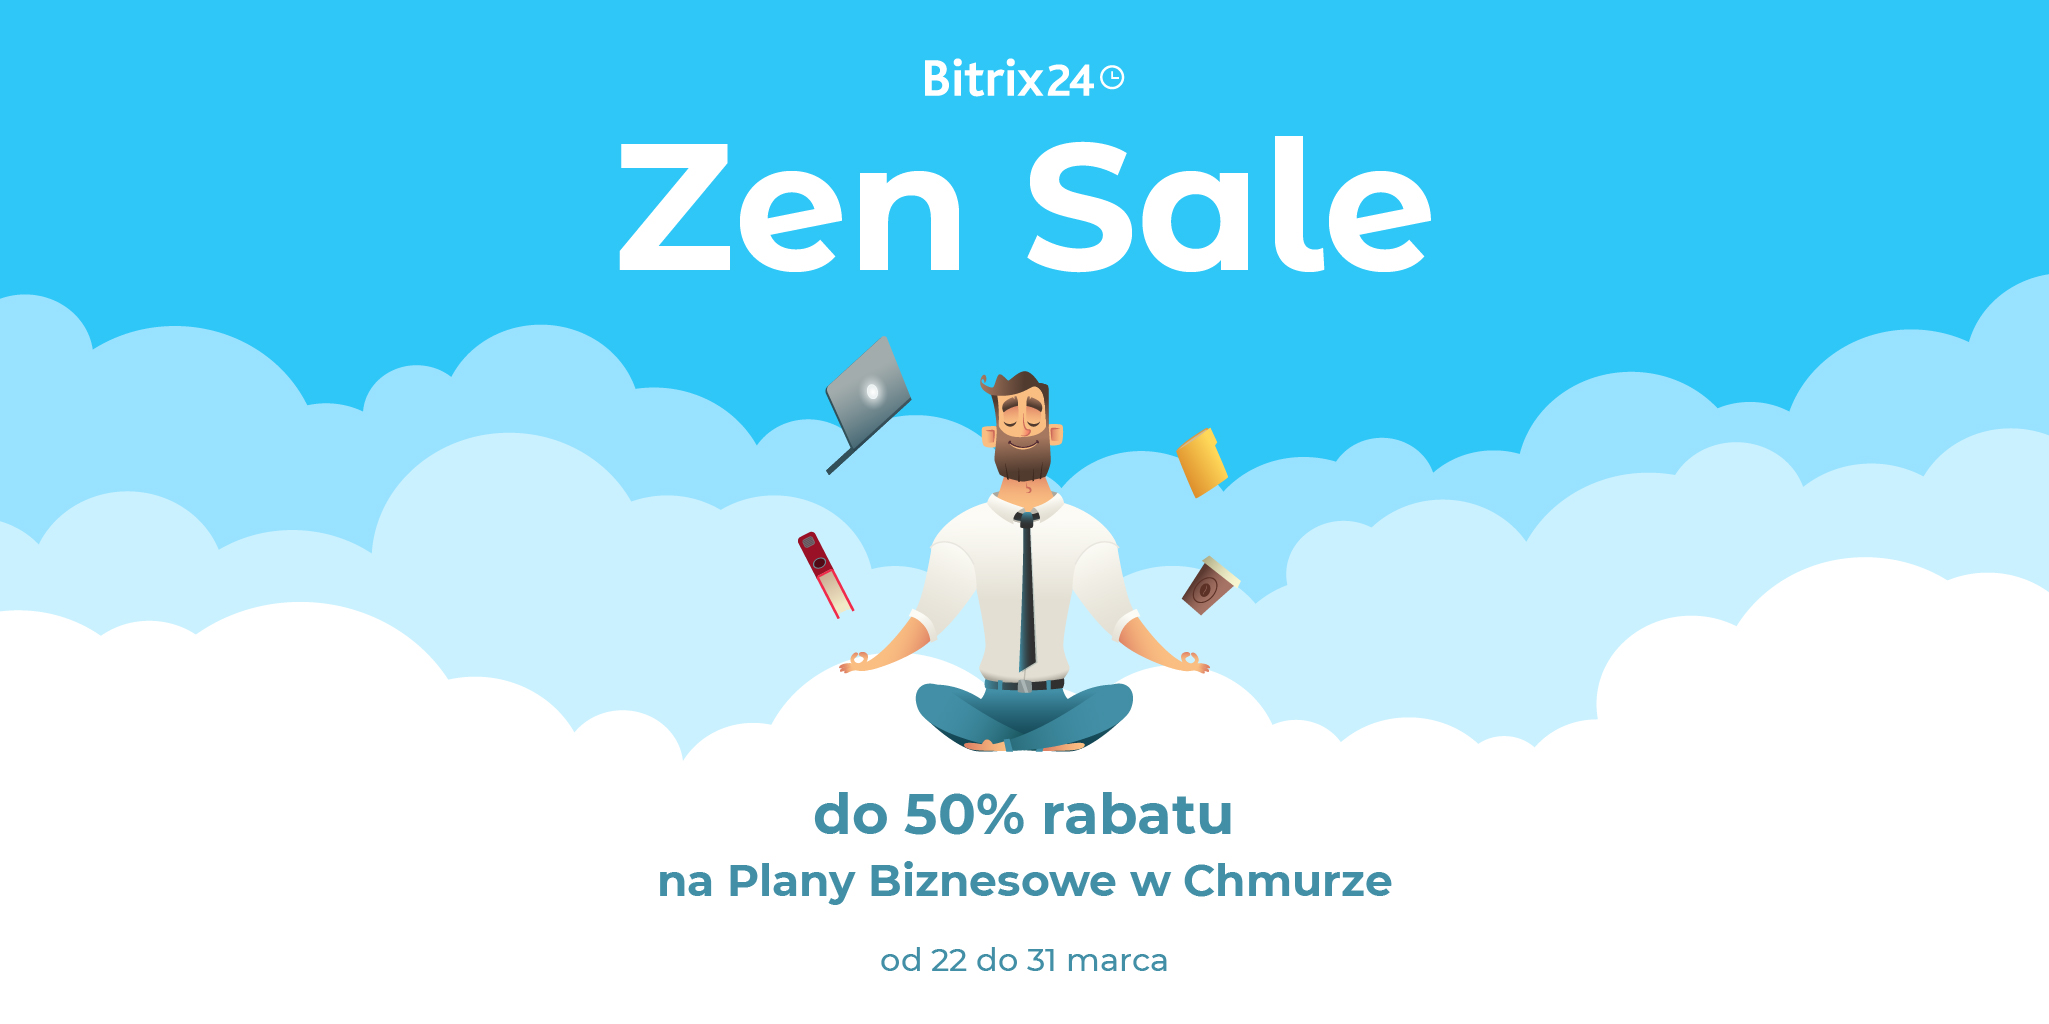 Promocja - Zen Sale Bitrix24 do 50% rabatu!